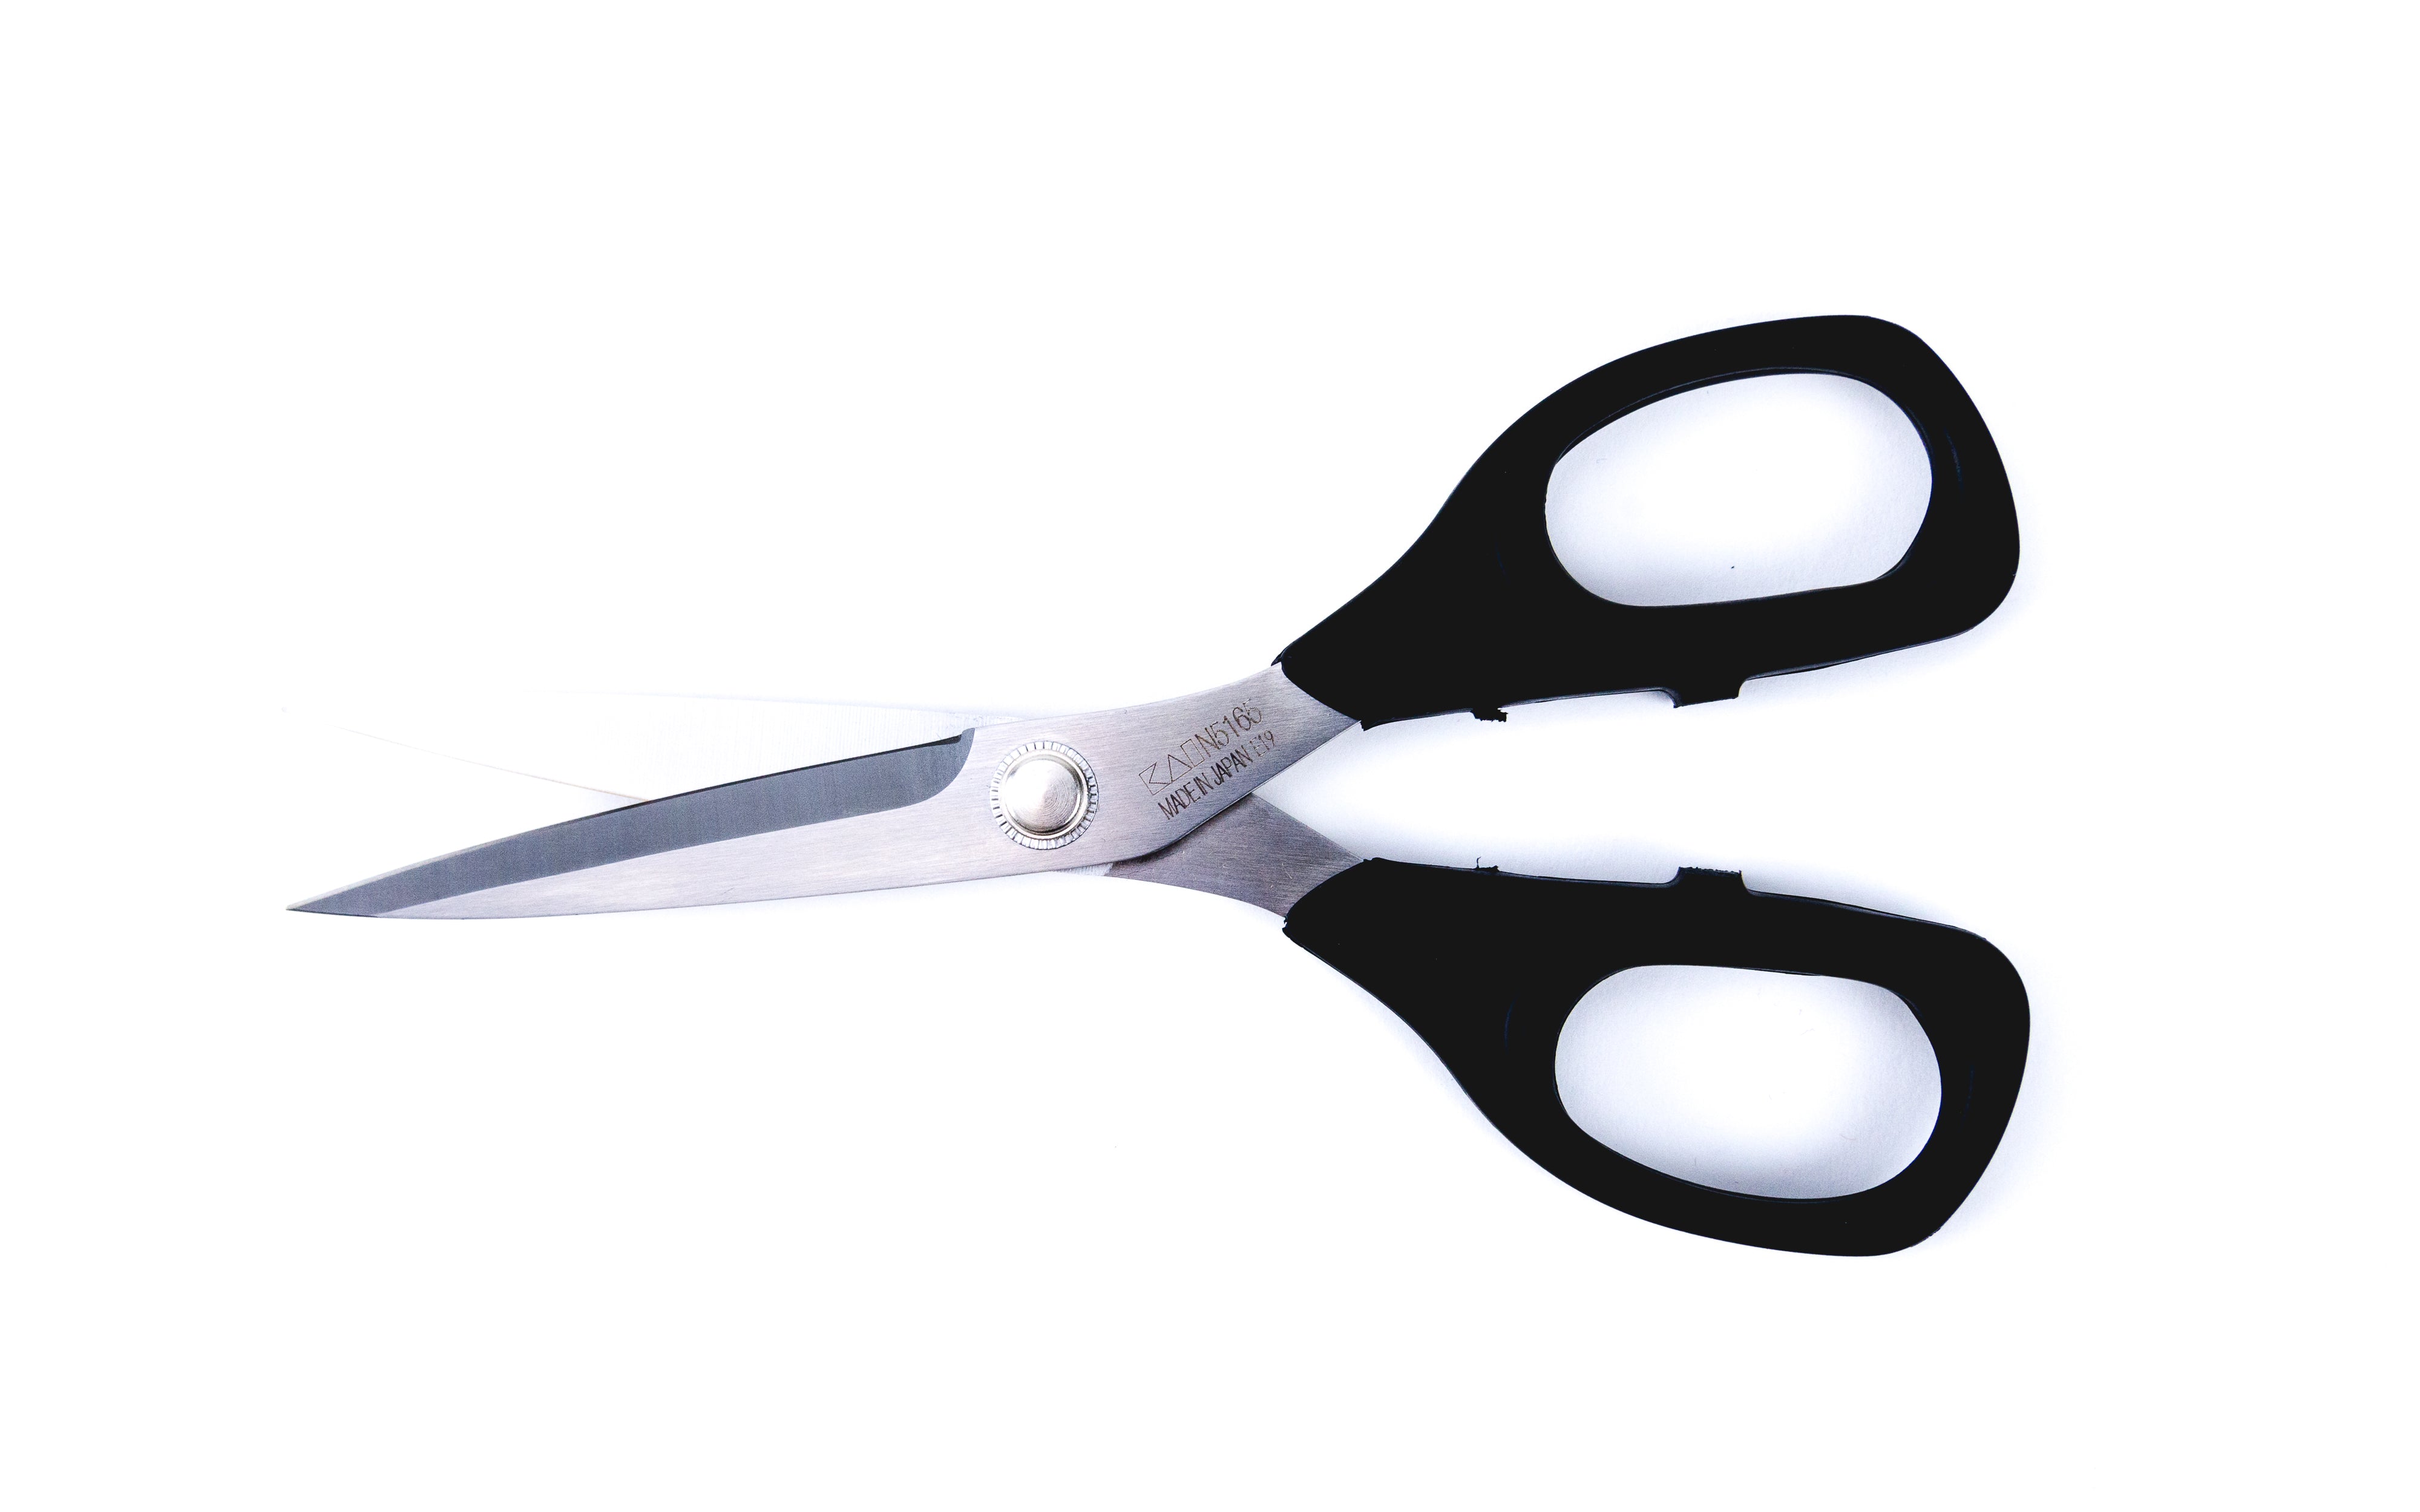 Kai 5165 Sewing Scissors - 6 1/2